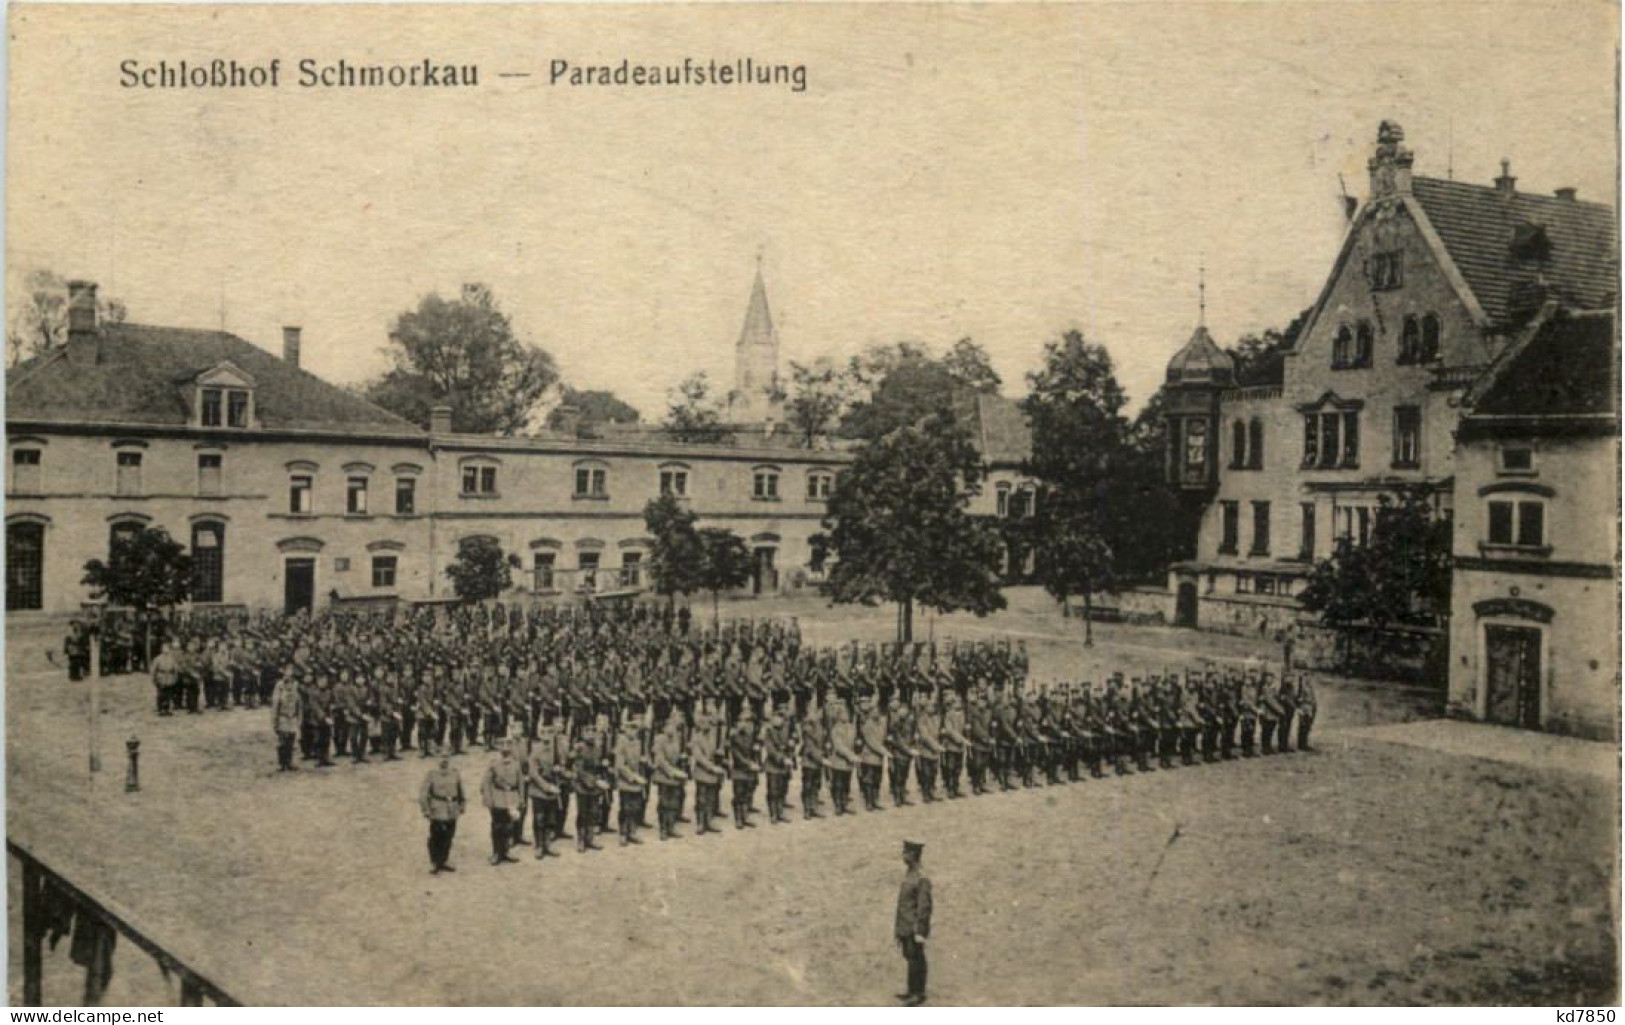 Lager Schmorkau, Schlosshof, Paradeaufstellung - Königsbrück